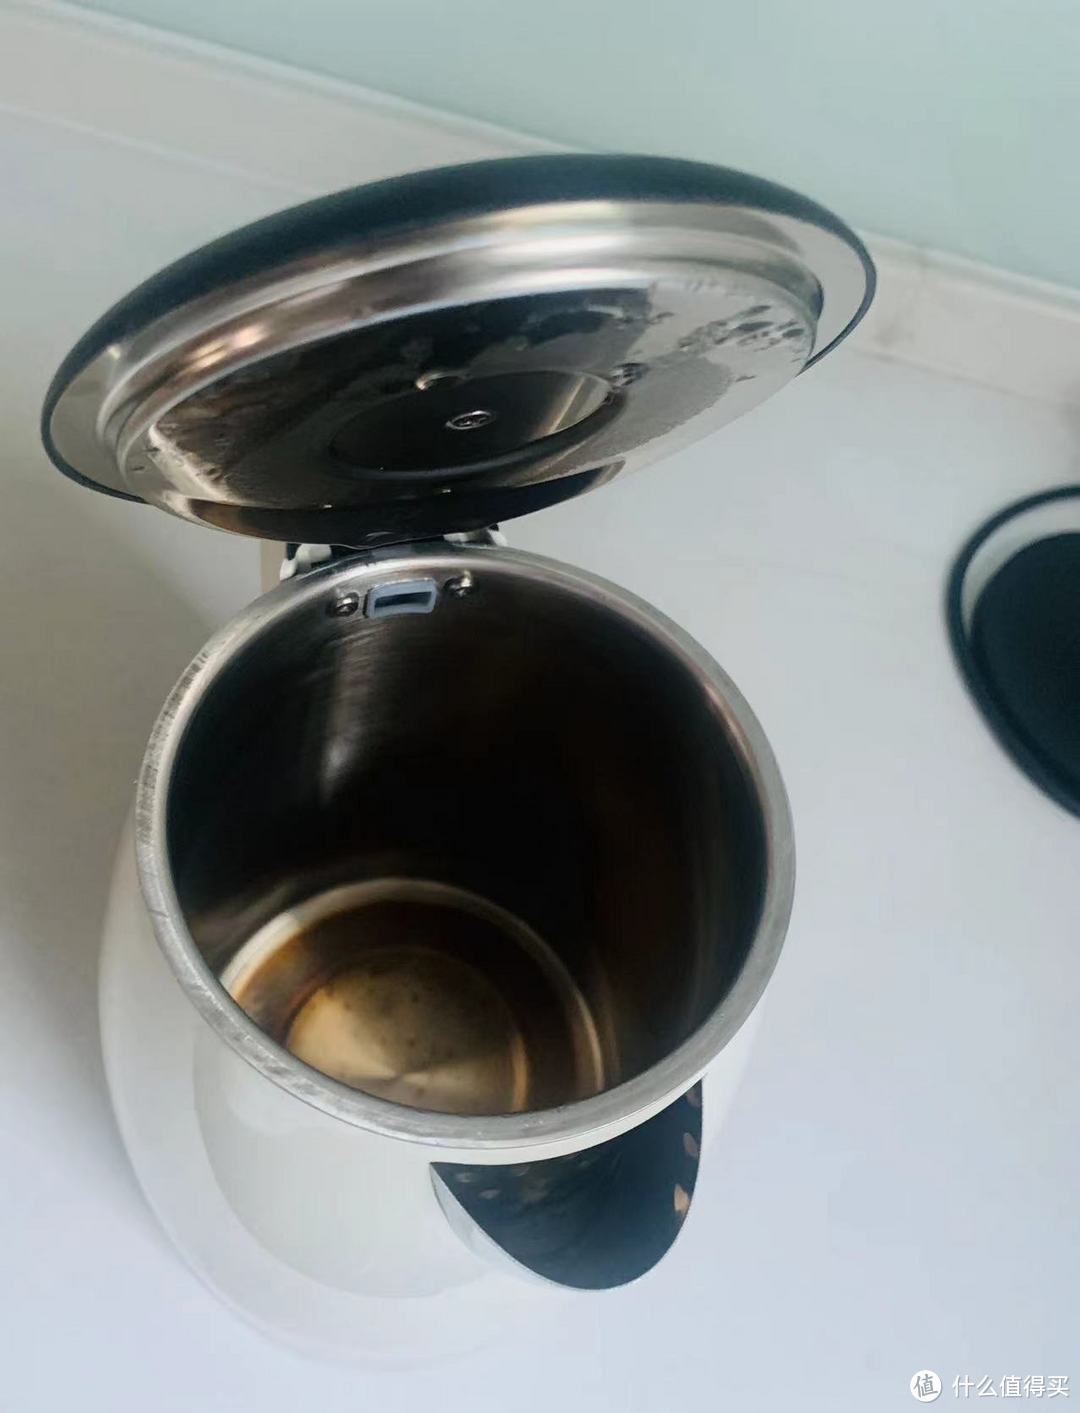 品质与便捷的完美结合——苏泊尔电热水壶